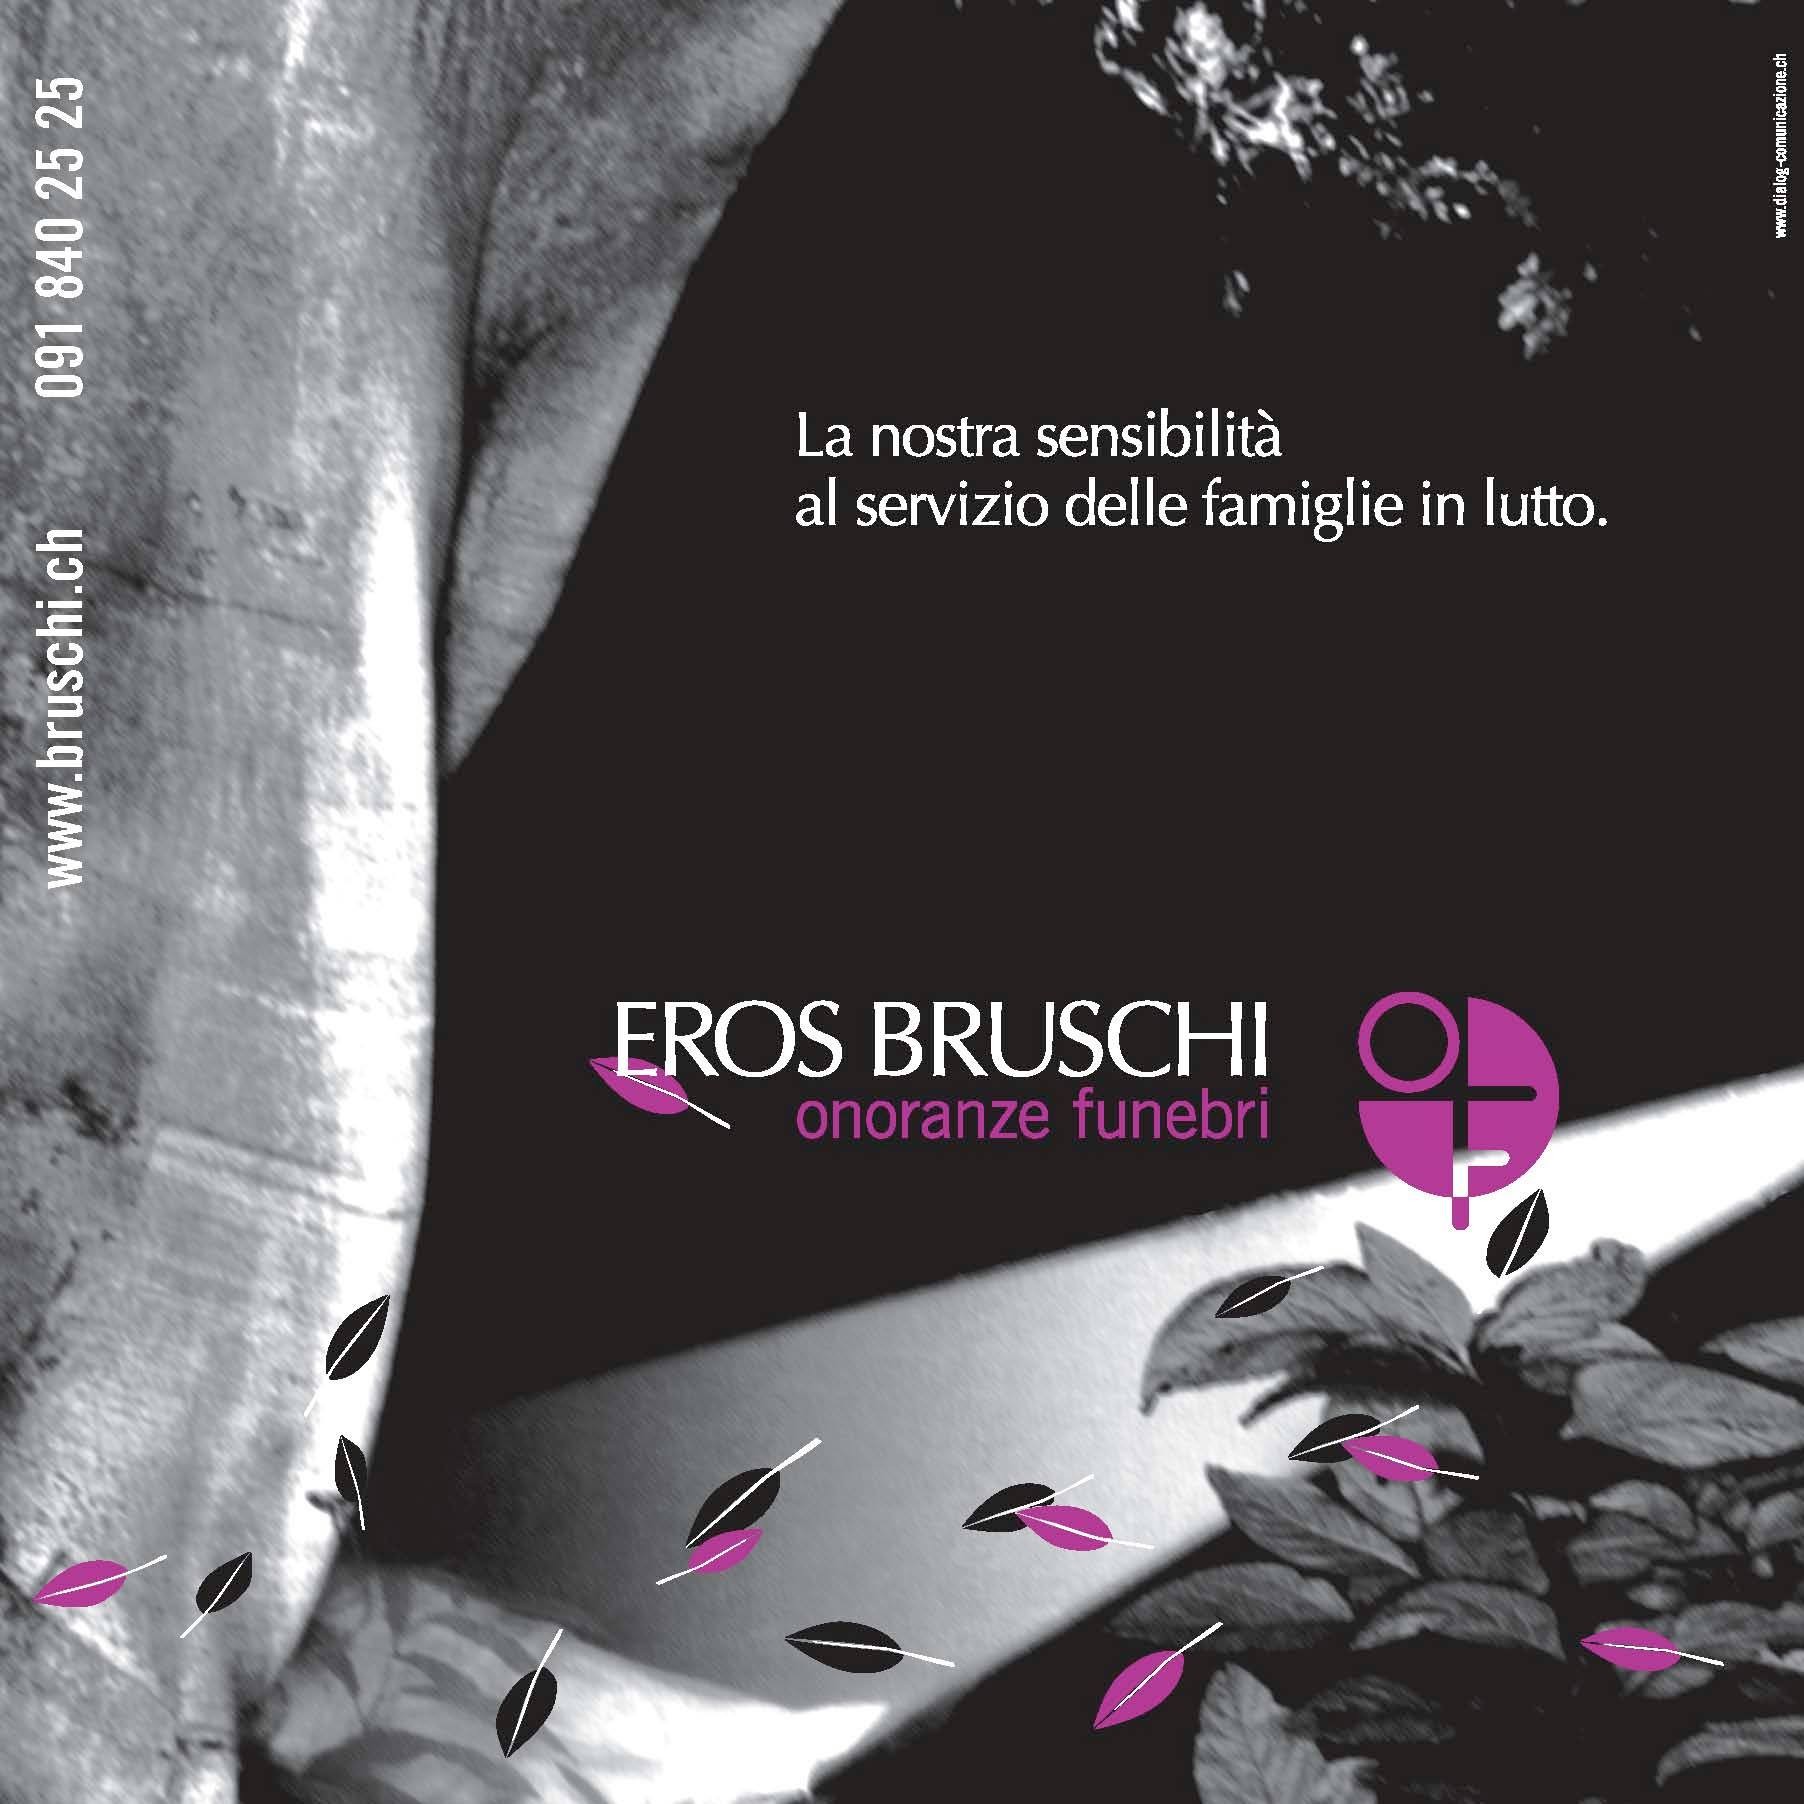 Eros Bruschi SA, Onoranze & Monumenti funebri, Succursale di Lugano (Bruschi Eros SA) Lugano 091 840 25 25